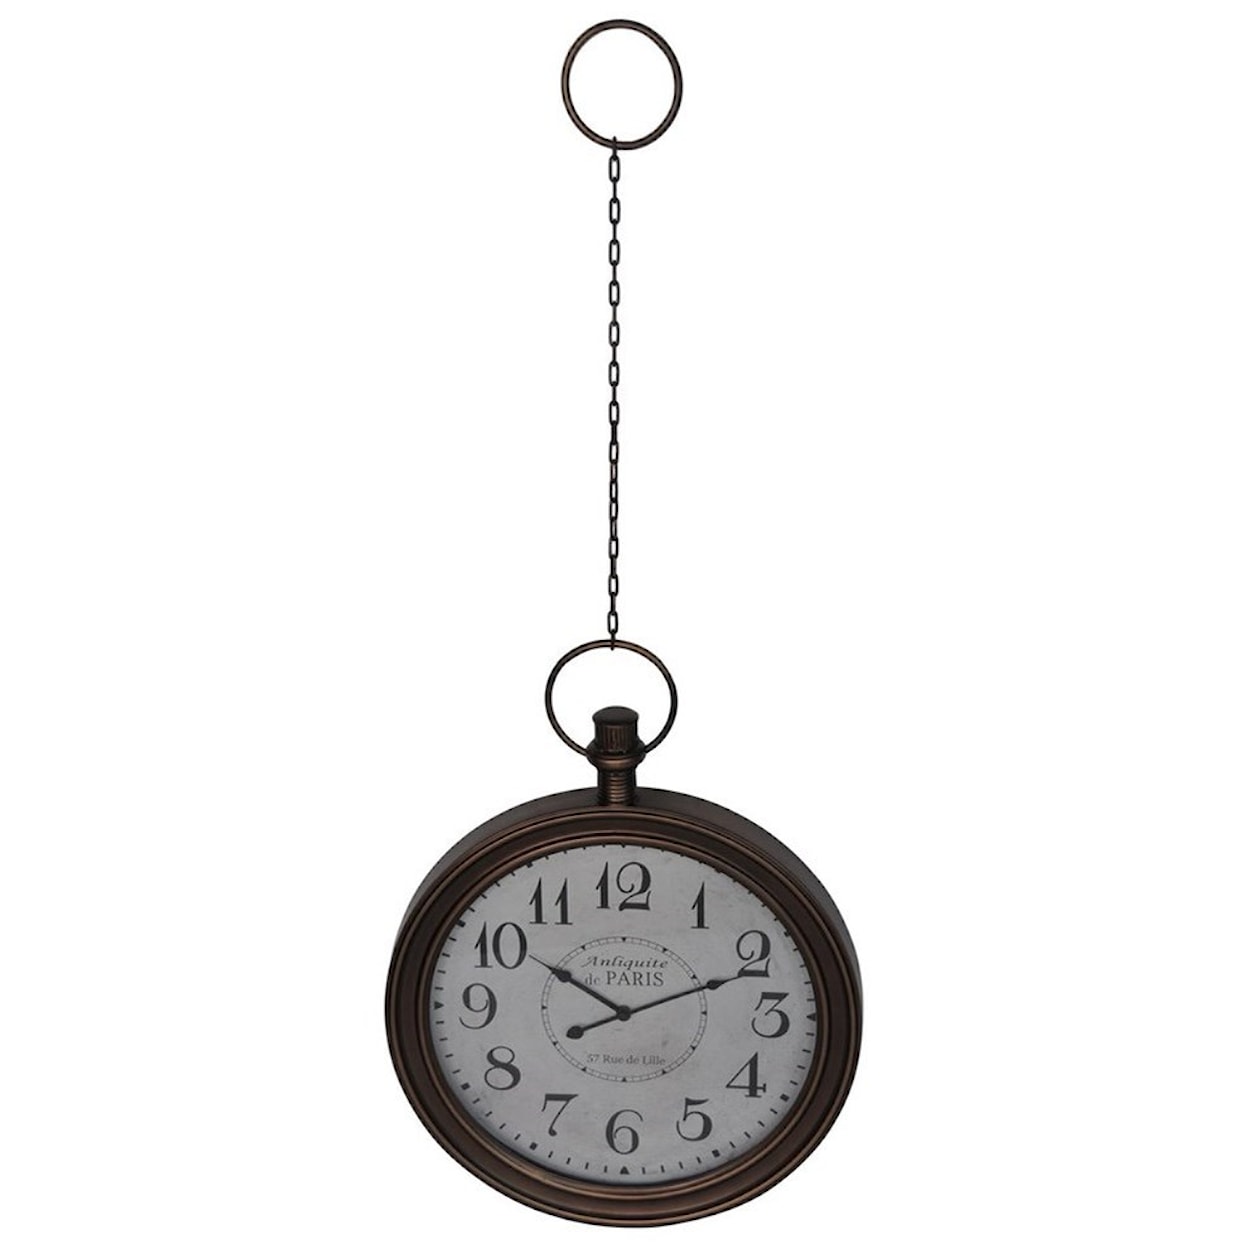 Crestview Collection Clocks Pocket Watch